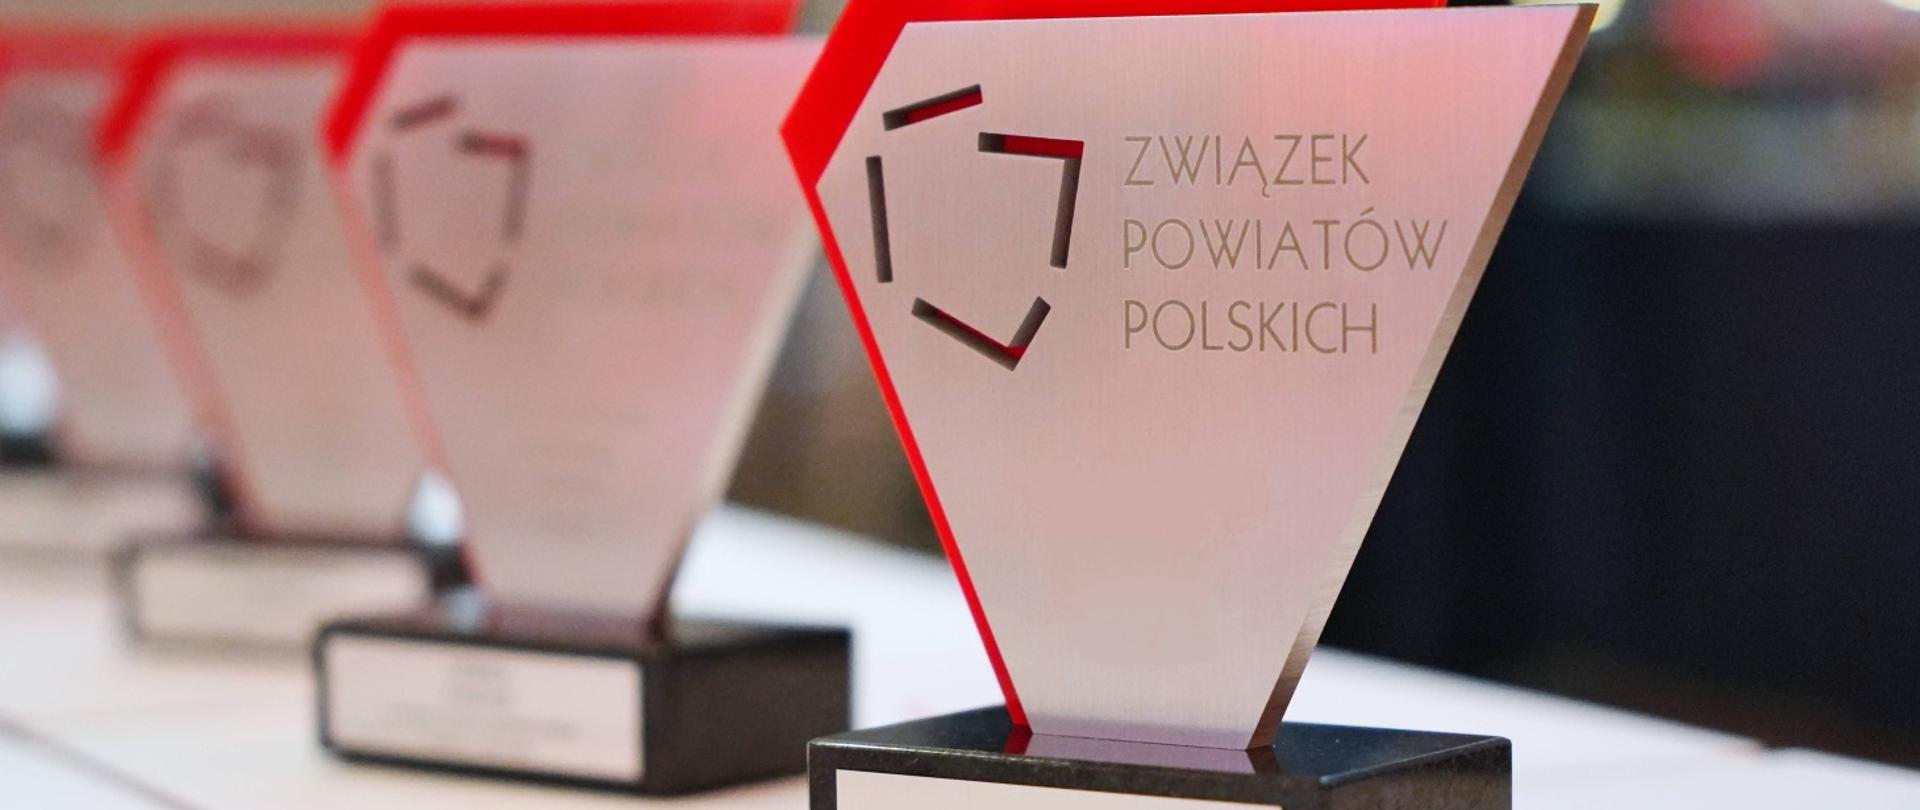 Statuetki Związku Powiatów Polskich